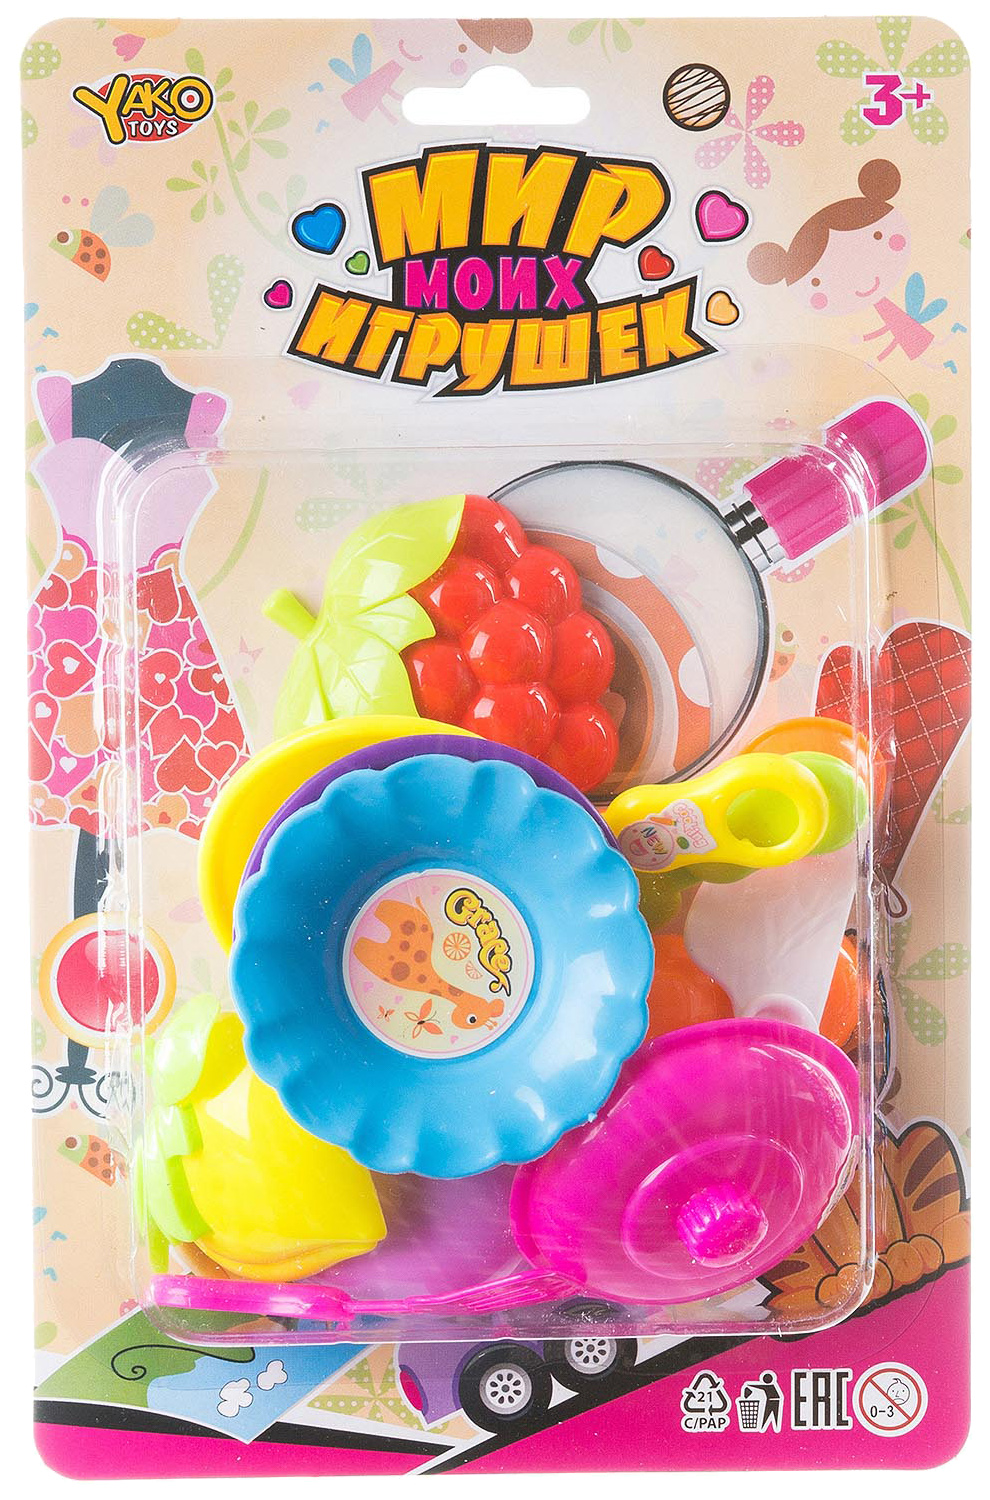 Игрушечная посуда Yako Toys 11 Пр. Серия Мир Micro Игрушек Д88721-GW